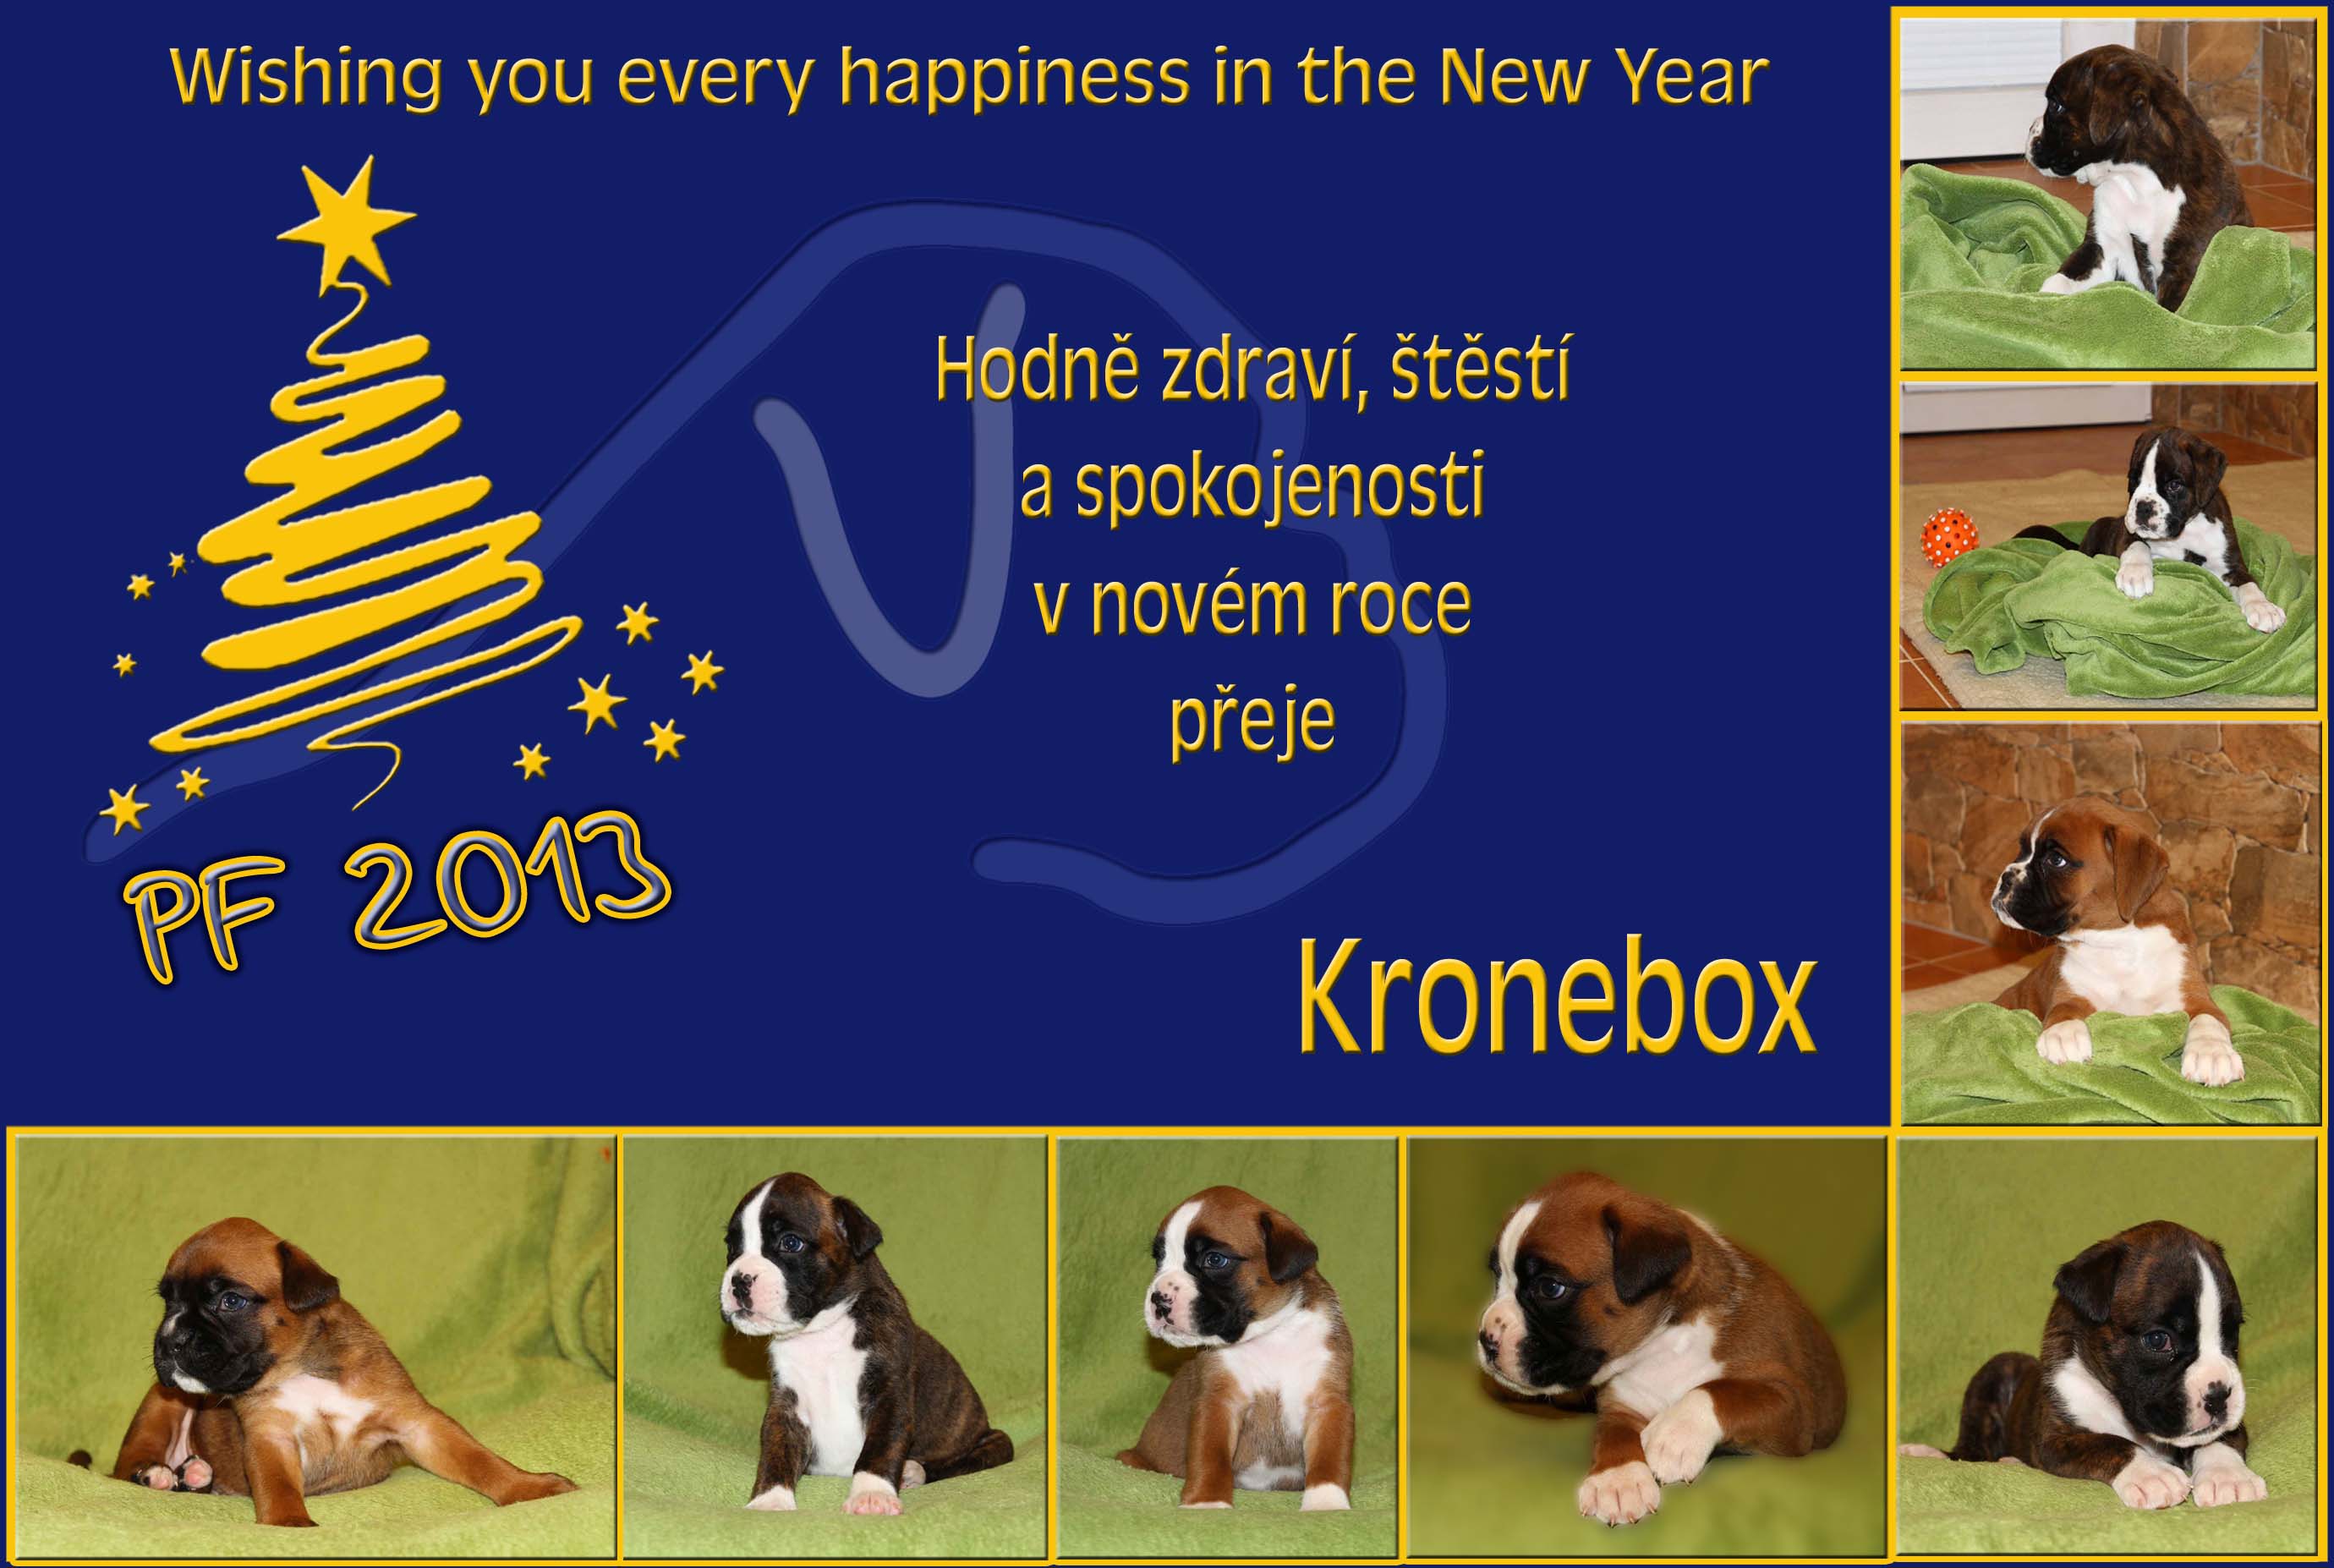 Kronebox